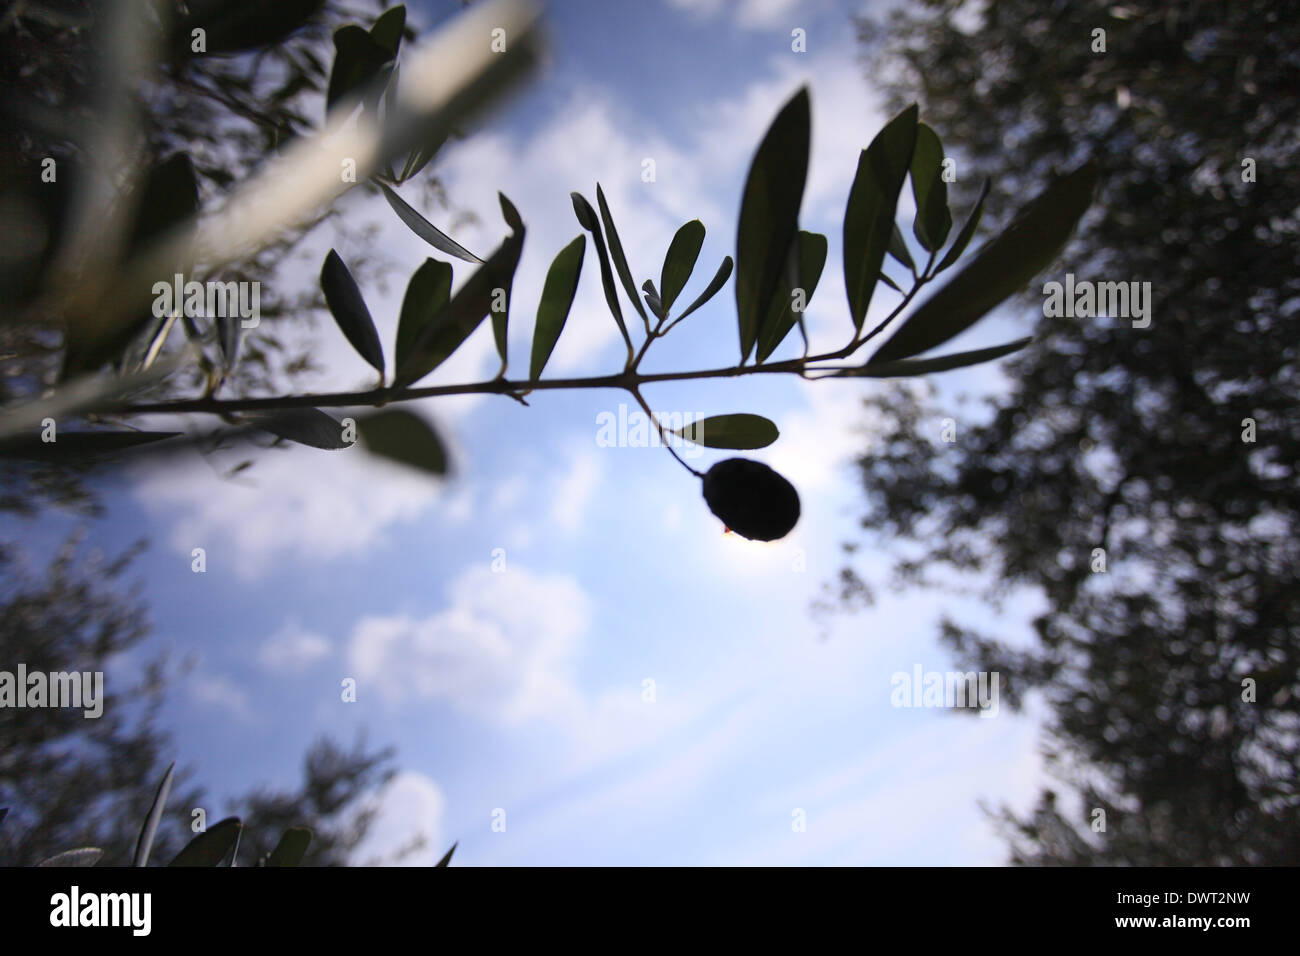 Beautiful Italian olive grove with trees and ripe olives, Cupramontana, near Ancona, Marche, Italy Stock Photo